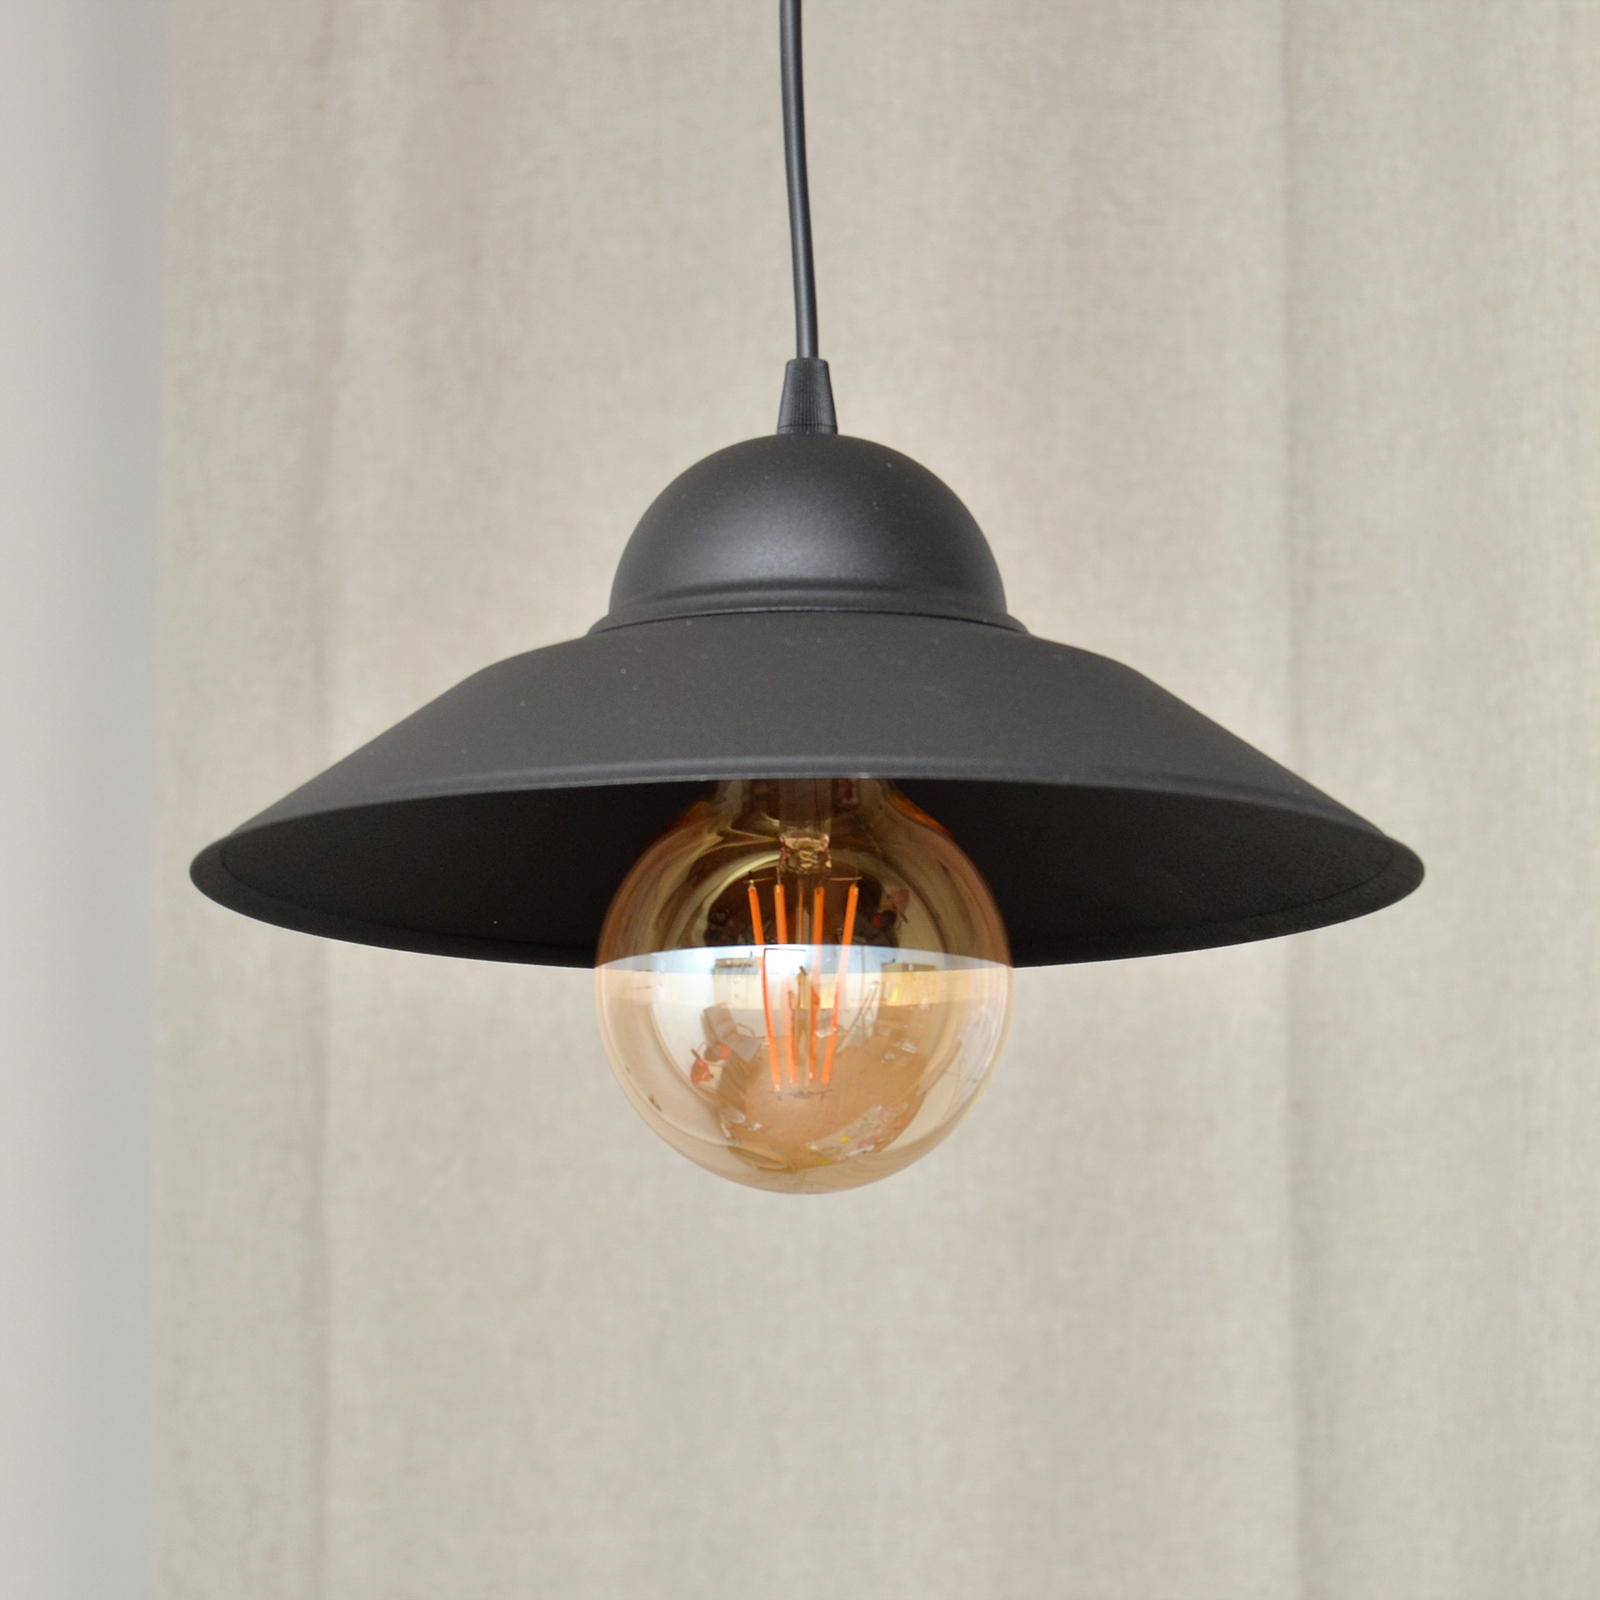 Hanglamp Sorapis, zwart, metaal, Ø 27,5 cm